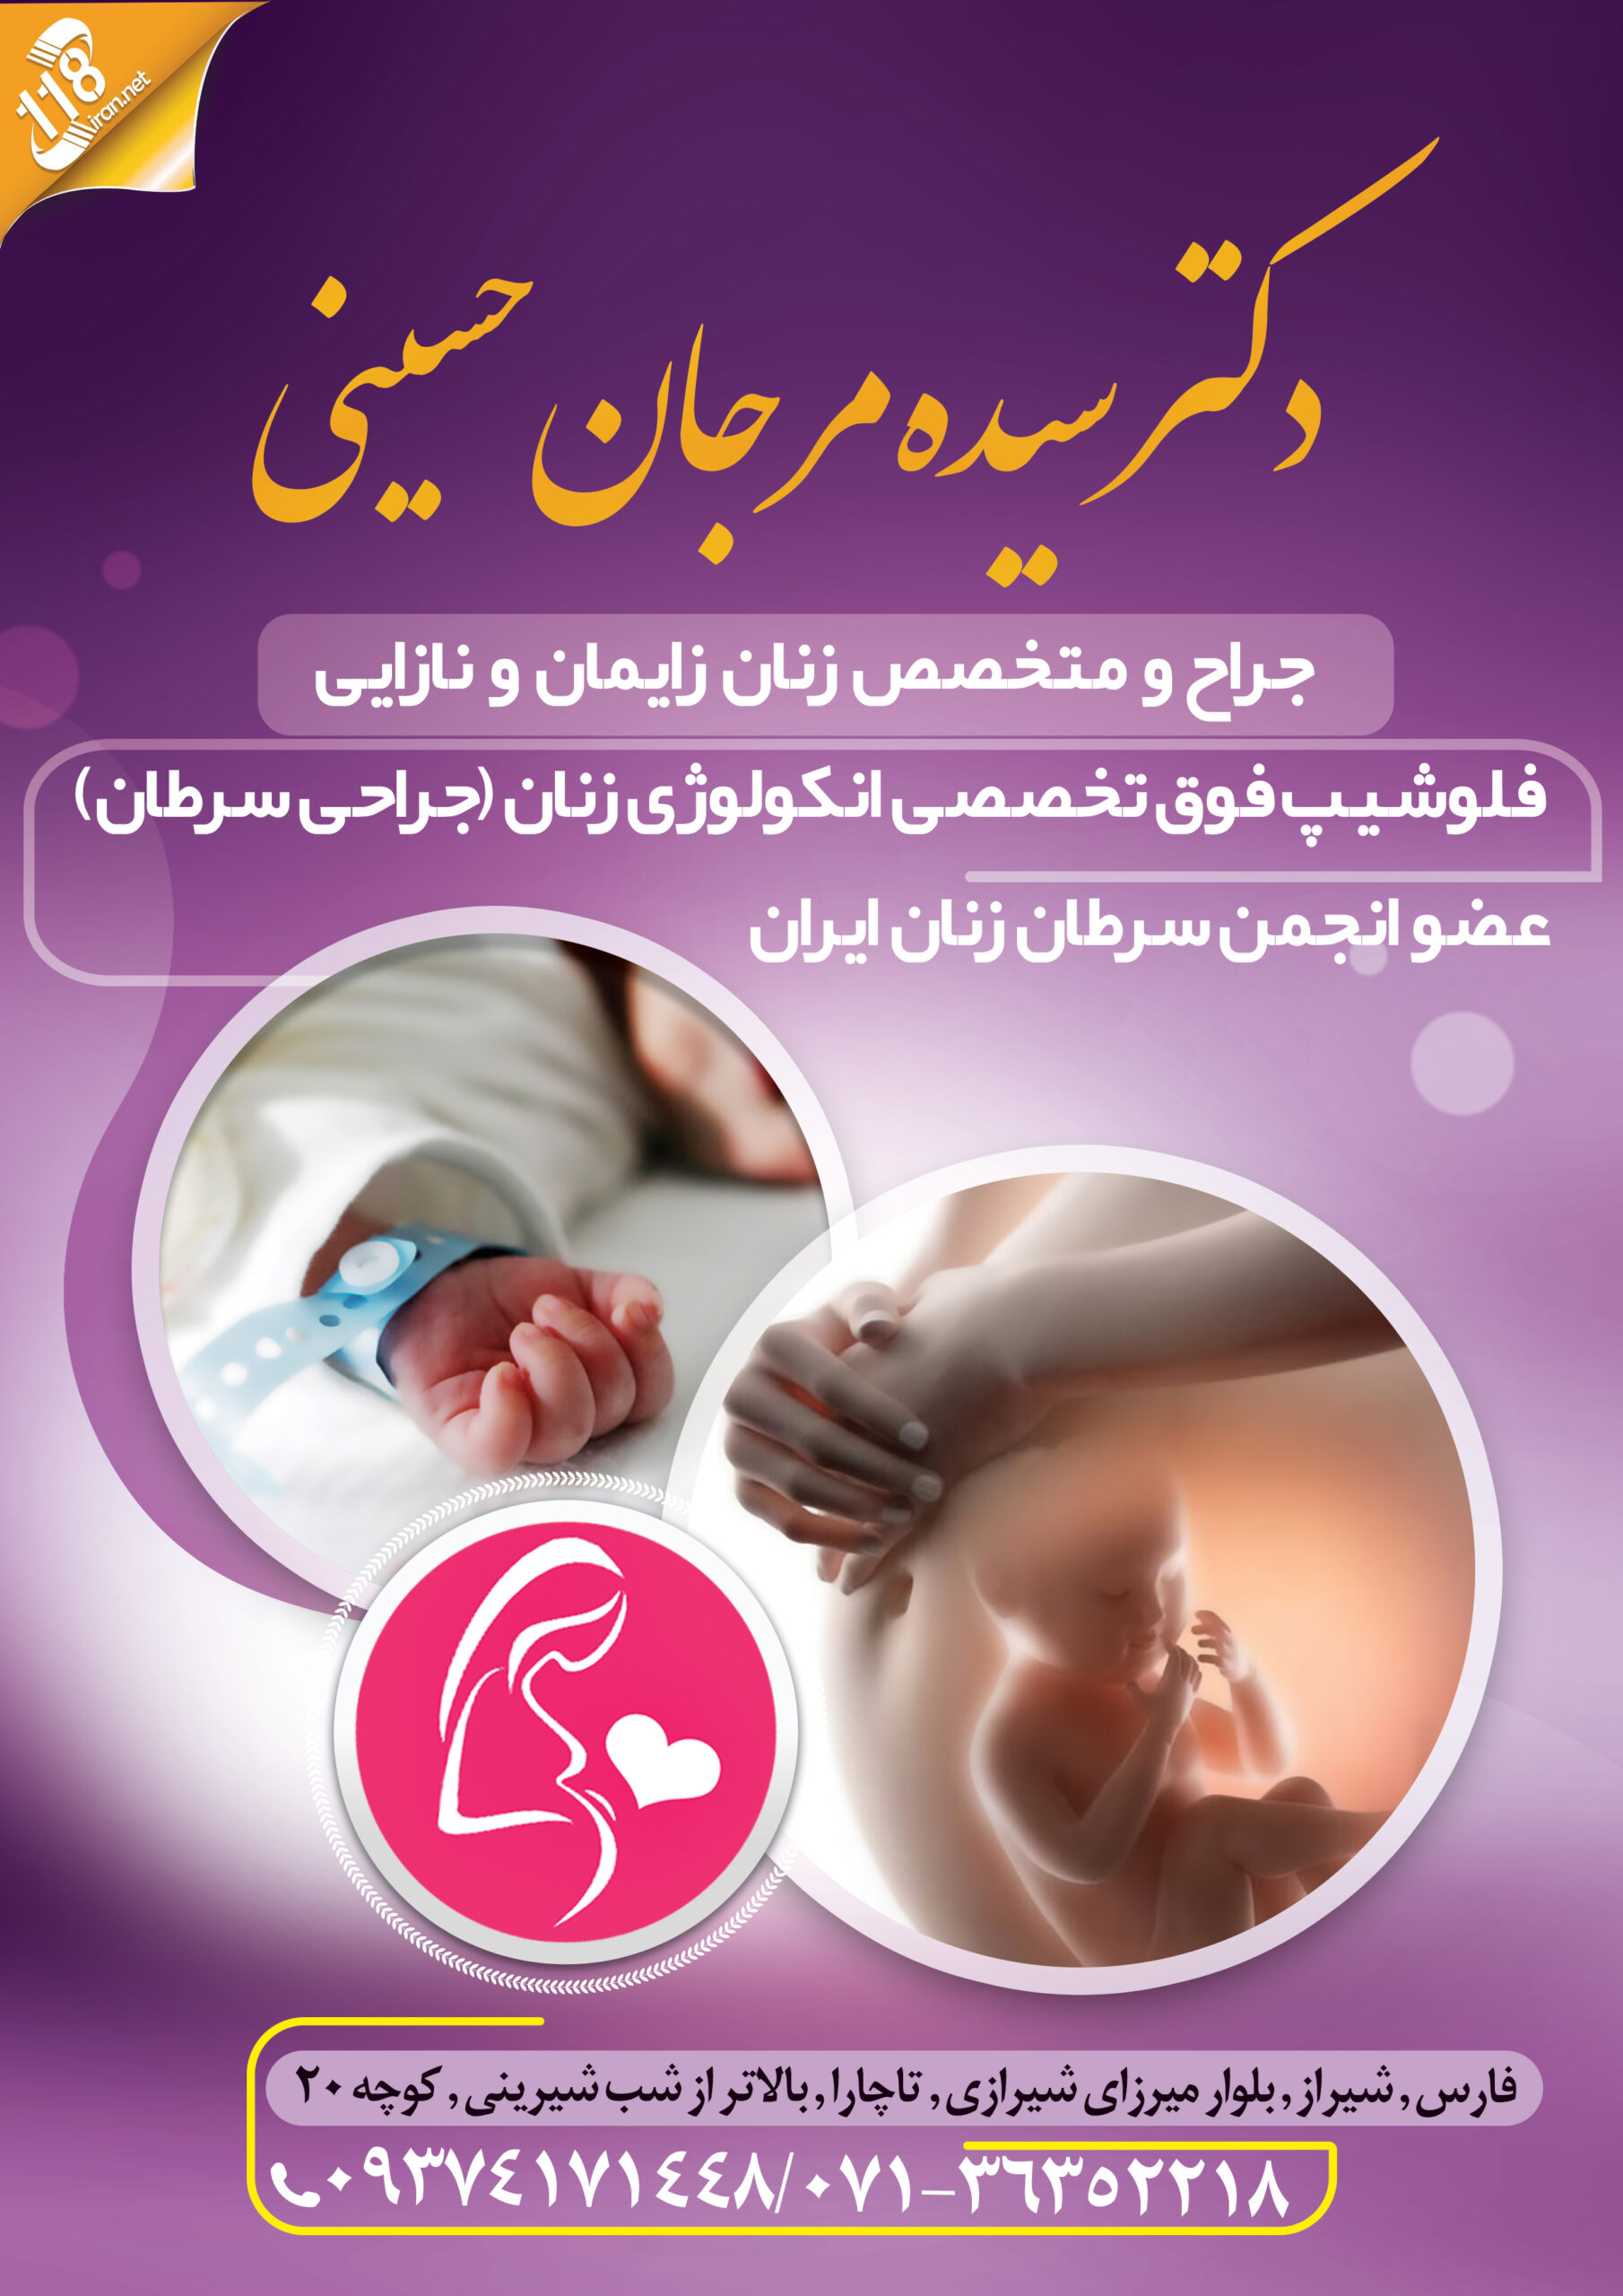  دکتر سیده مرجان حسینی در شیراز 